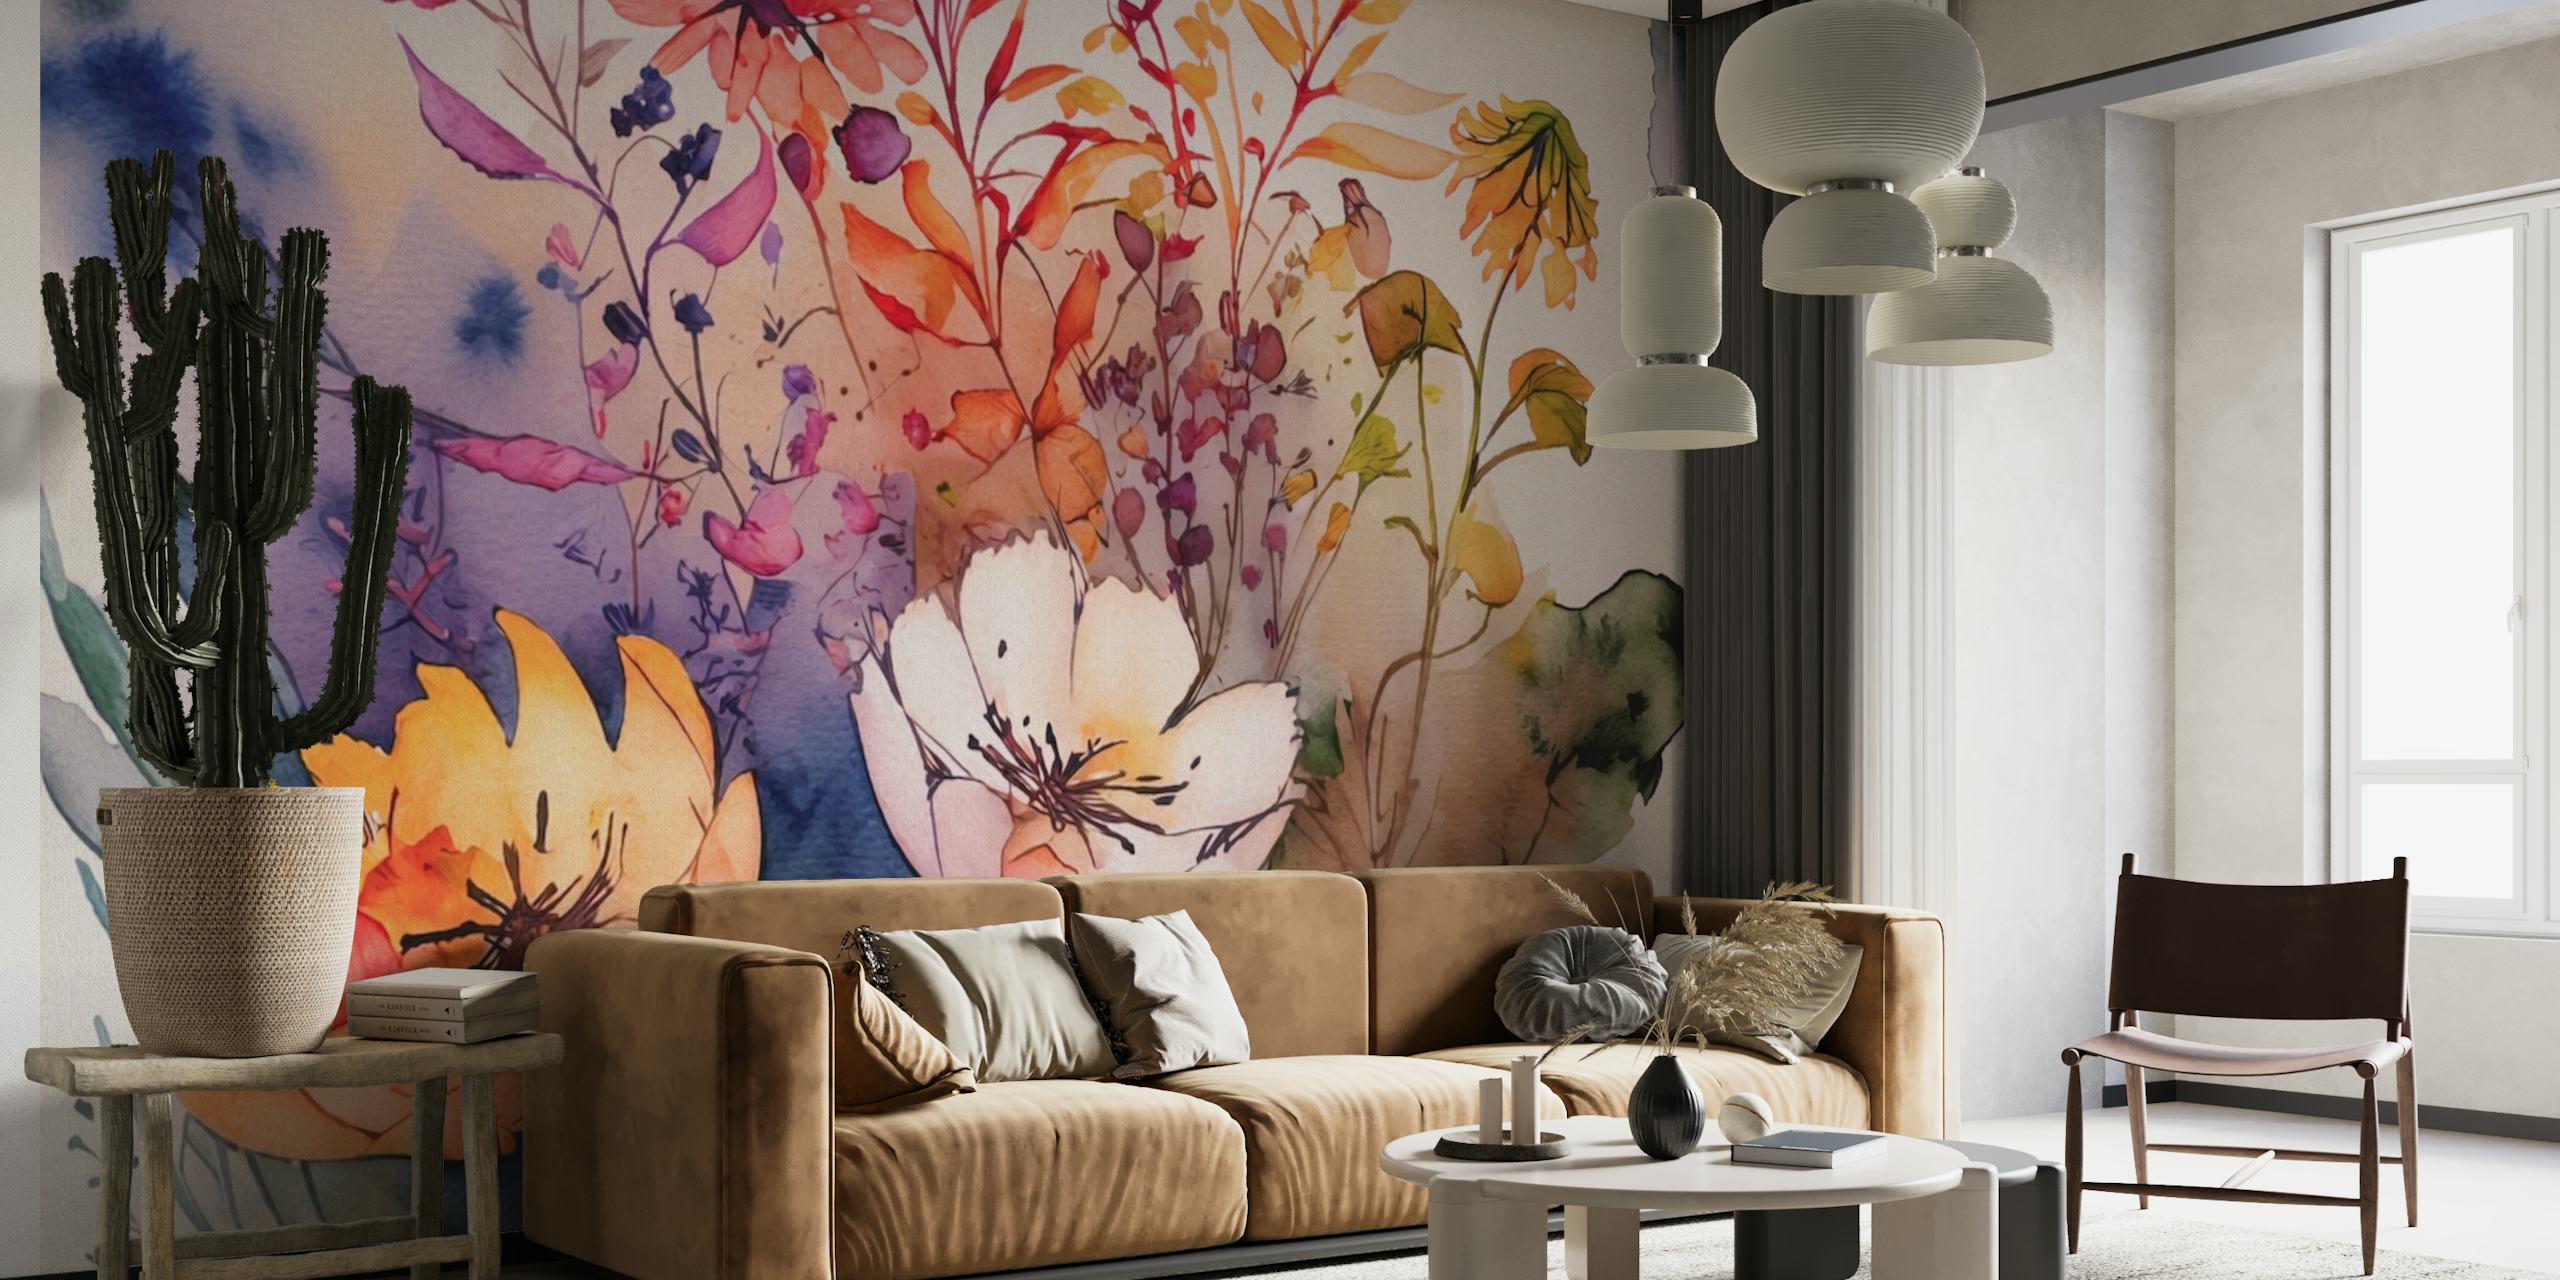 Elegant akvarel og blomster abstrakt kunst vægmaleri med bløde pasteltoner og kunstneriske blomster